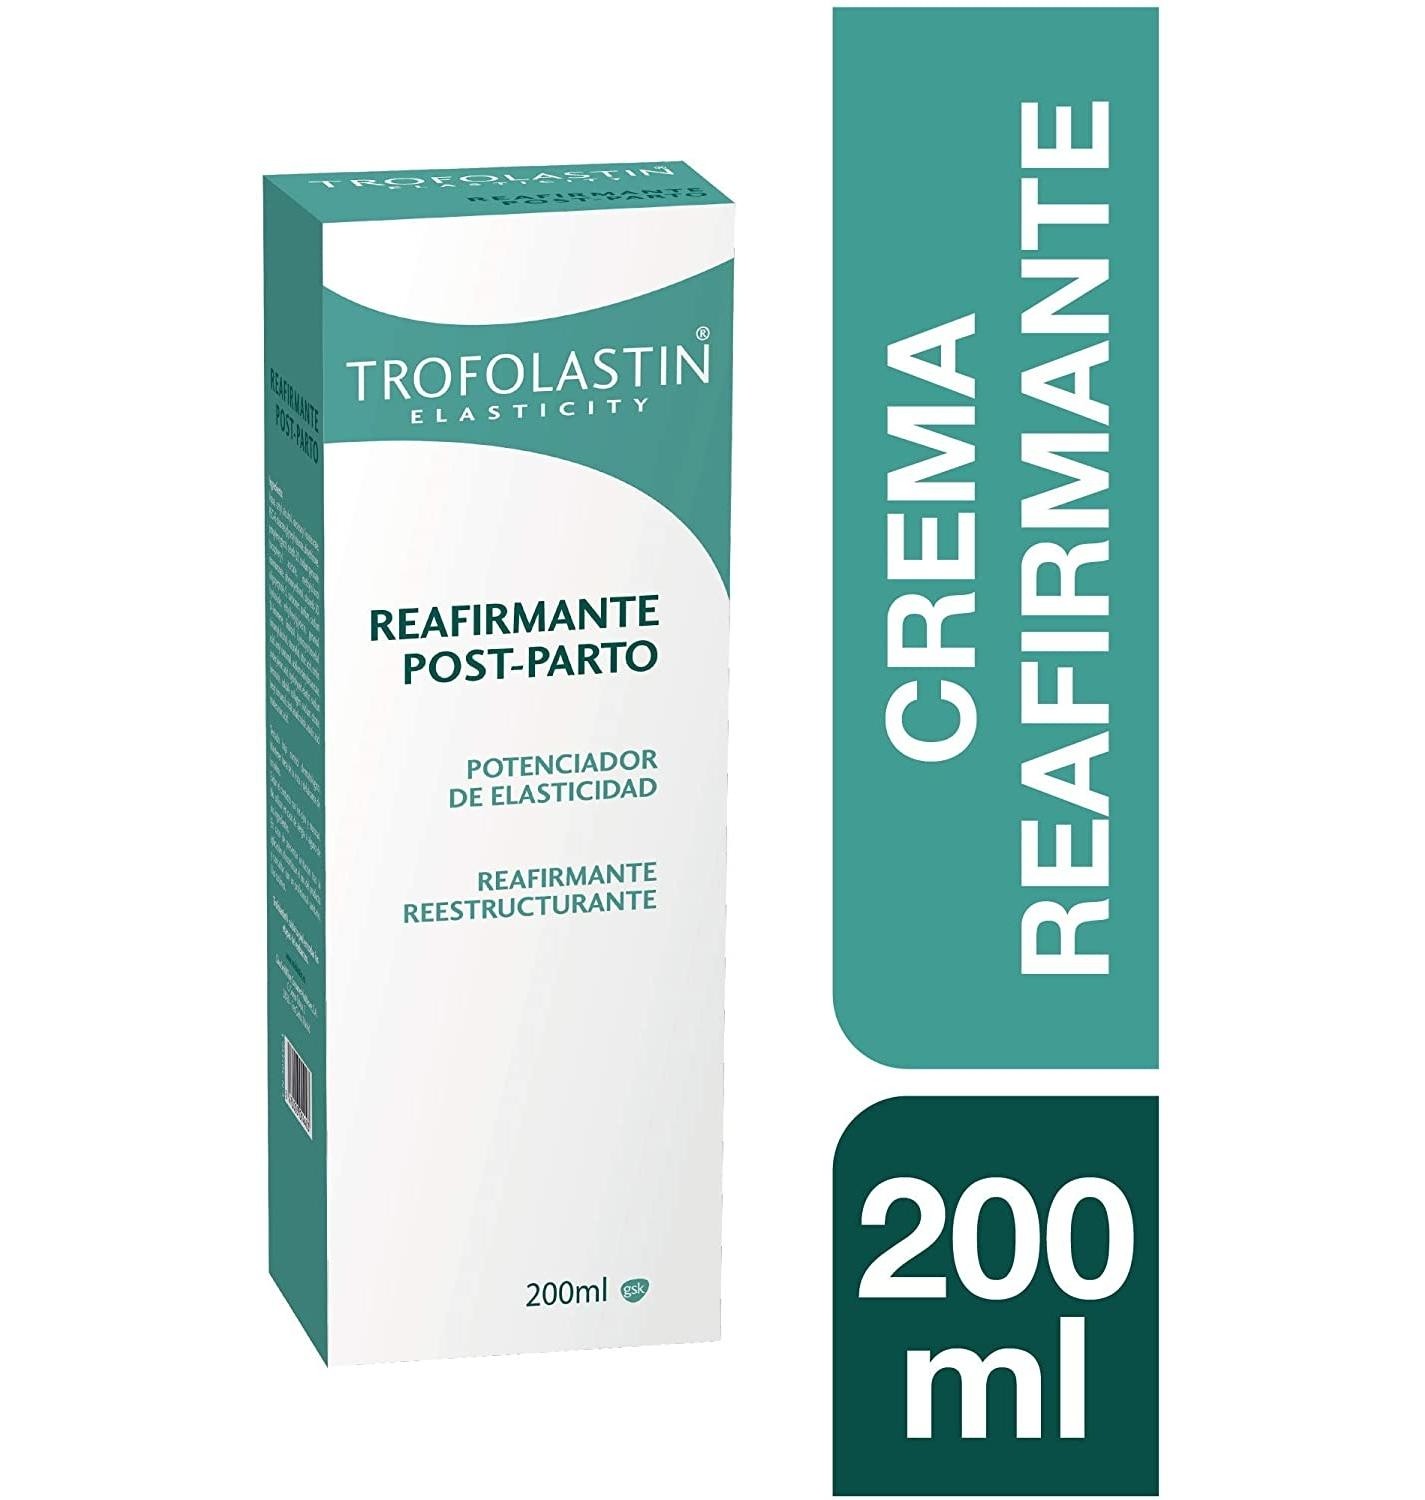 Trofolastín Reafirmante Post-parto 200ml OFERTA